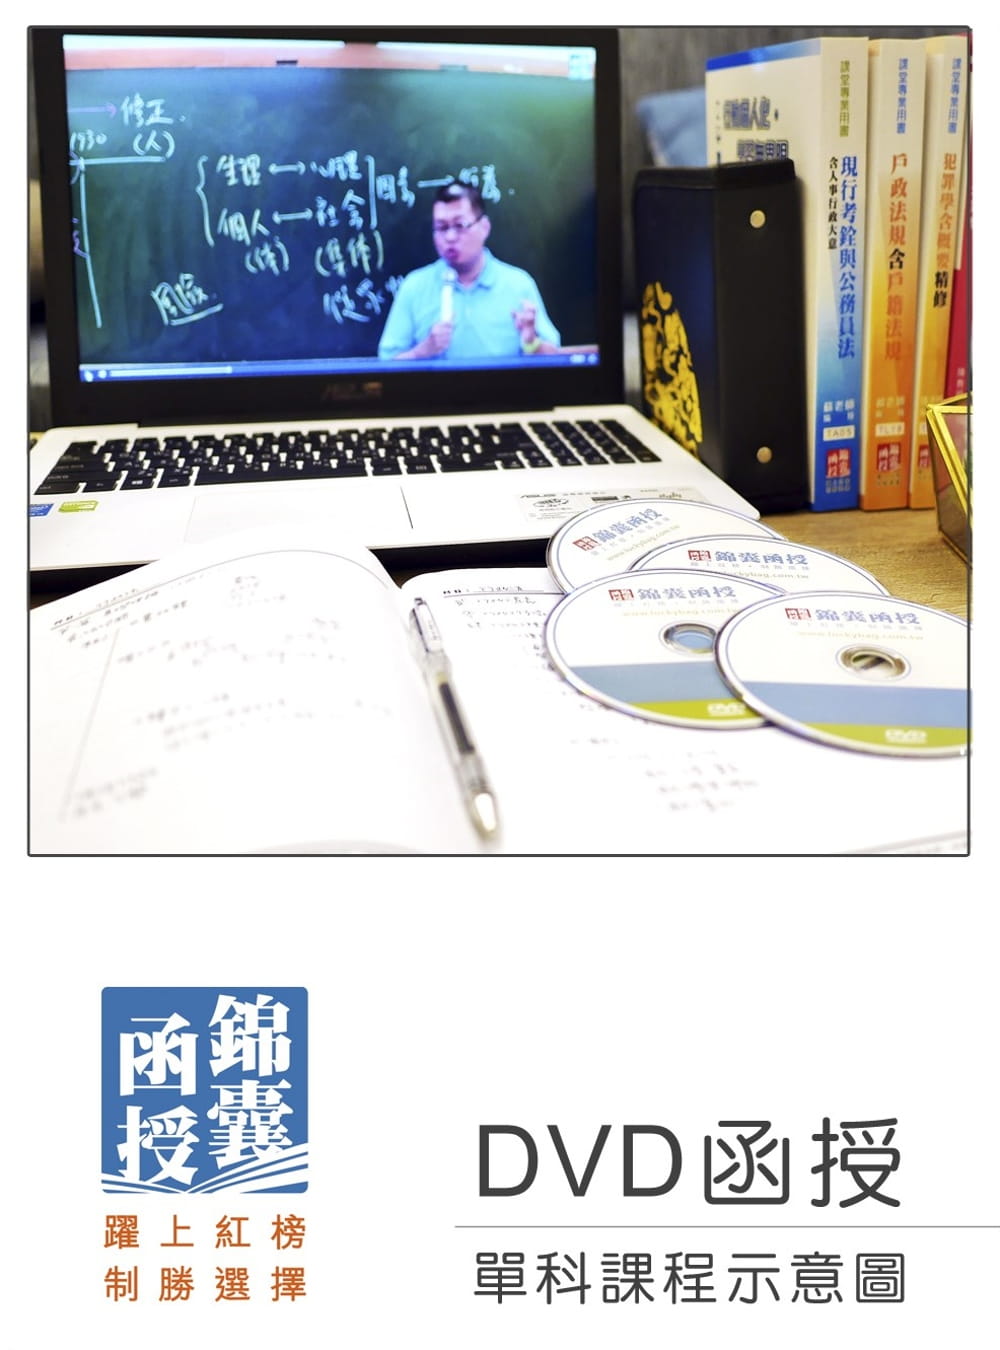 【DVD函授】公共經濟學(含申論題庫班)：單科課程(109版)